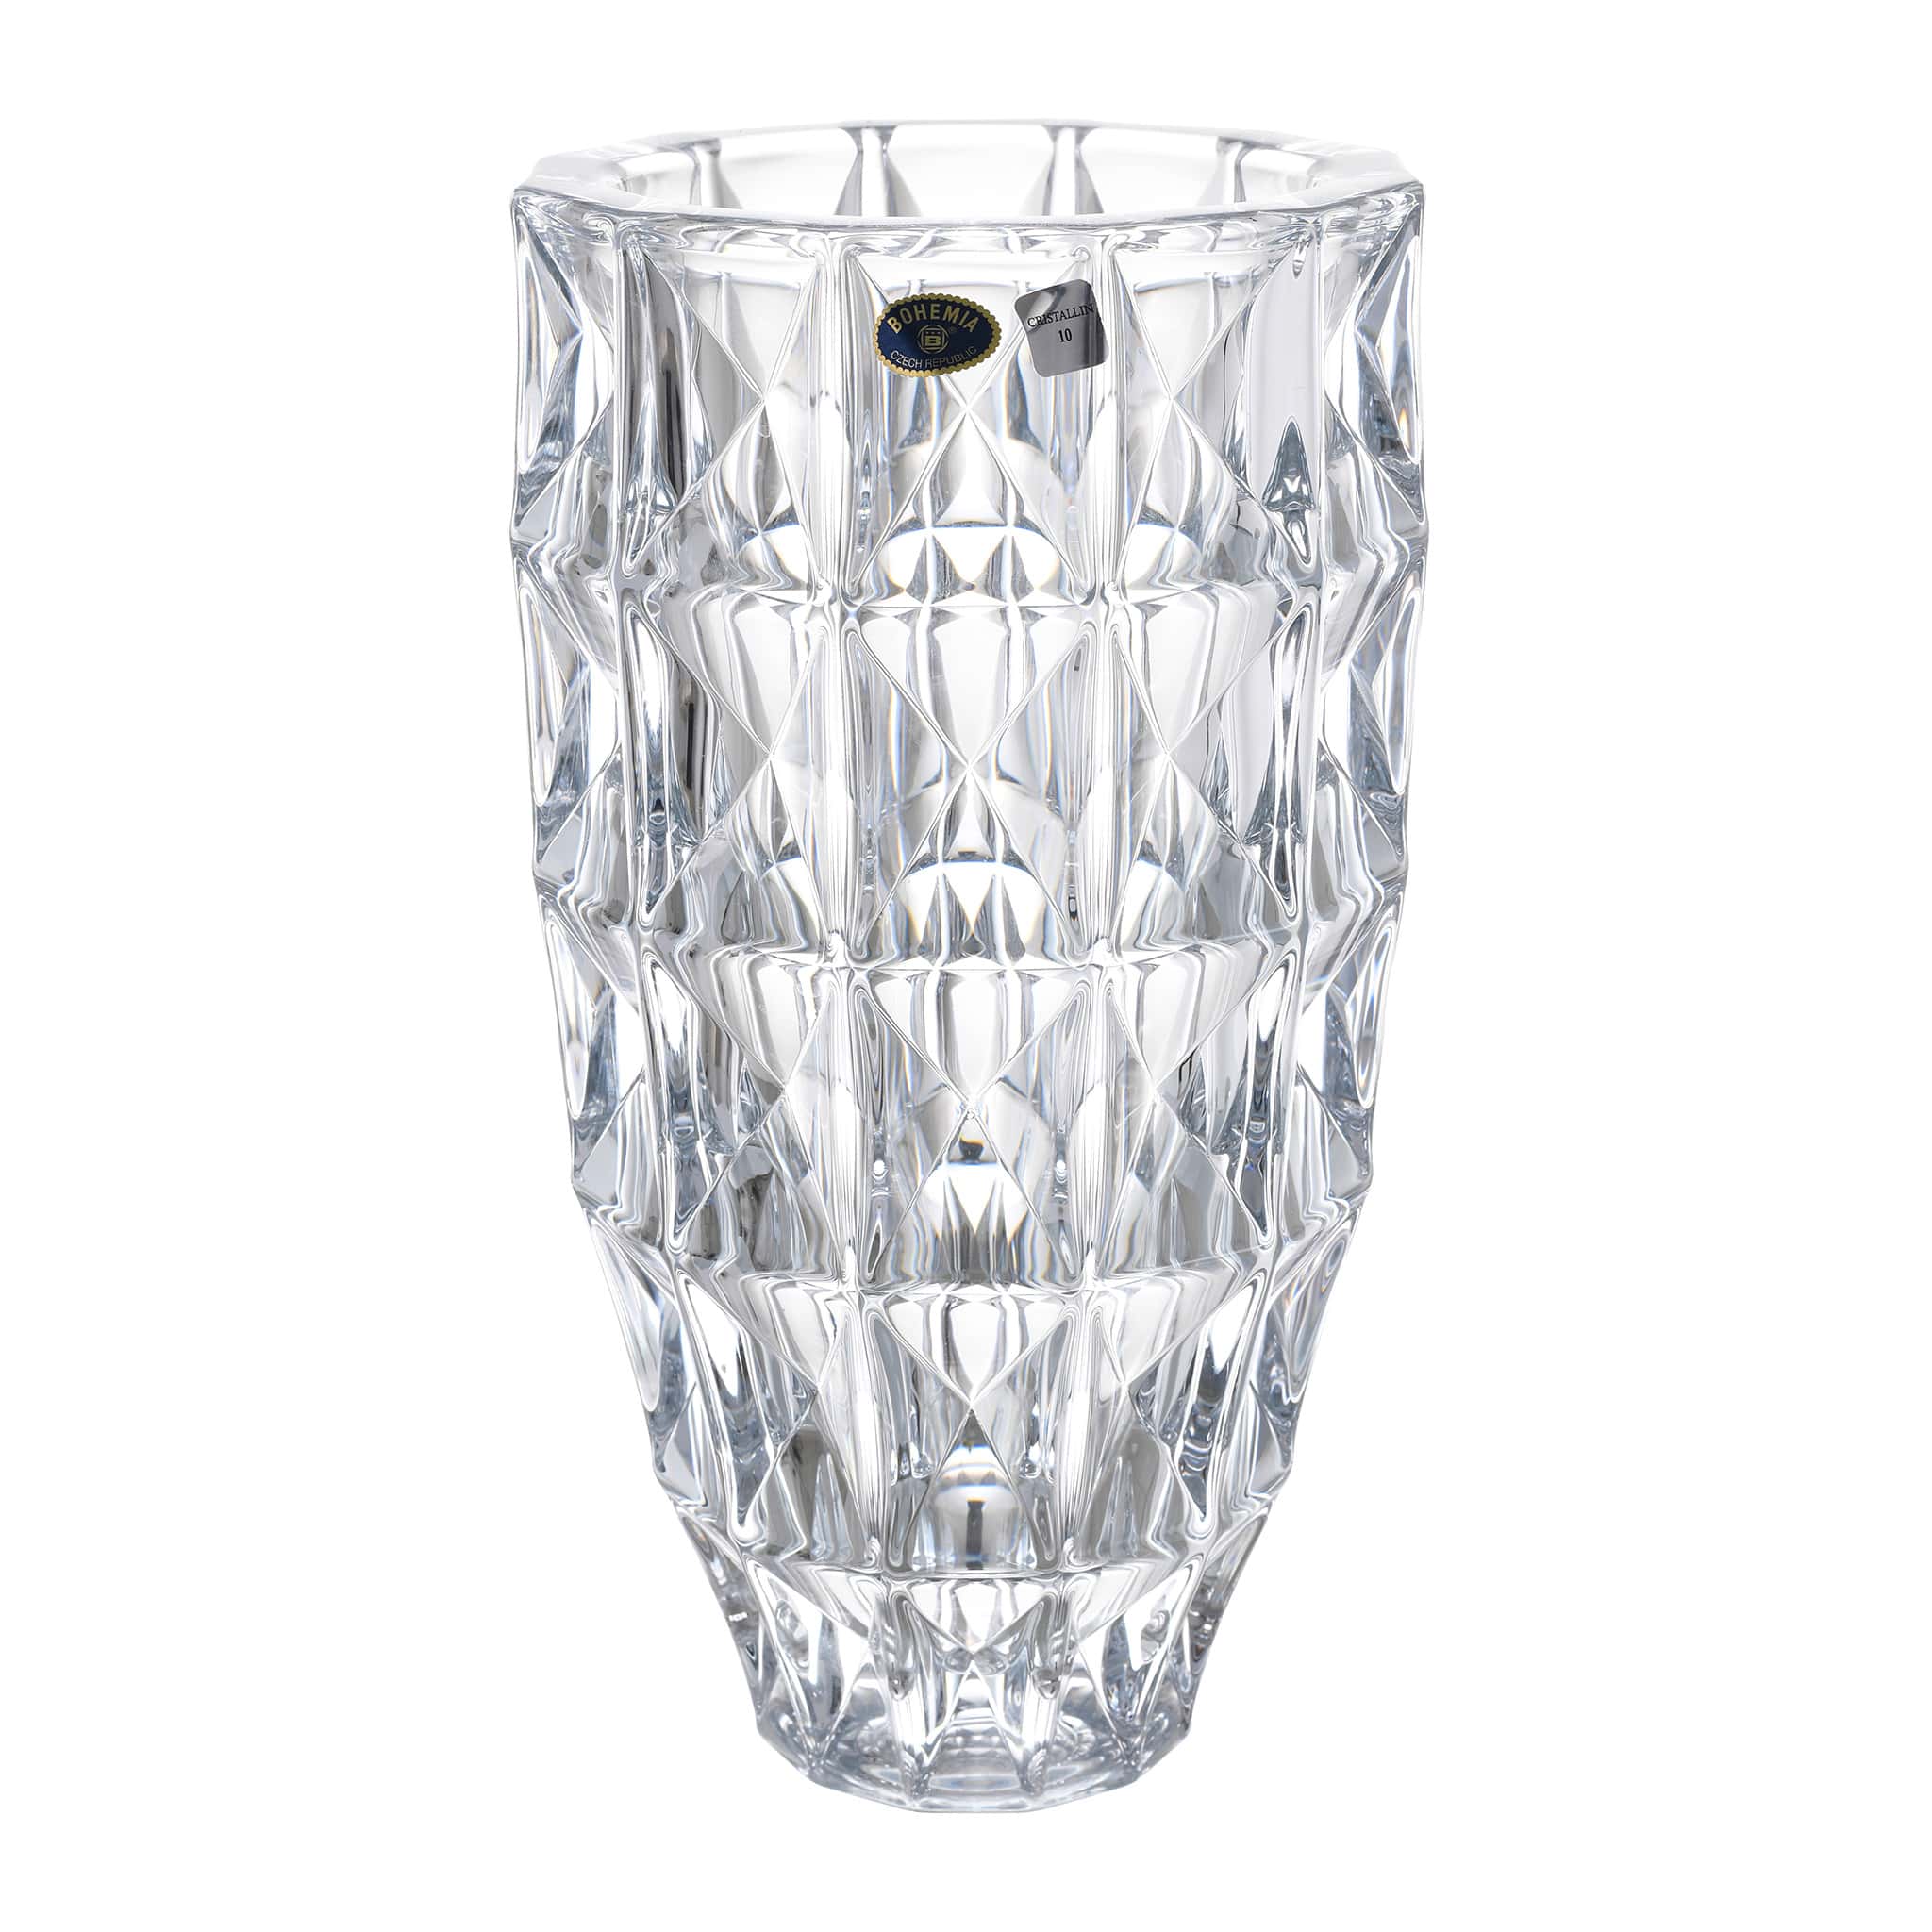 Bohemia Crystal - Cylindrical Crystal Vase - Diamond Design - 28 cm - 270006857